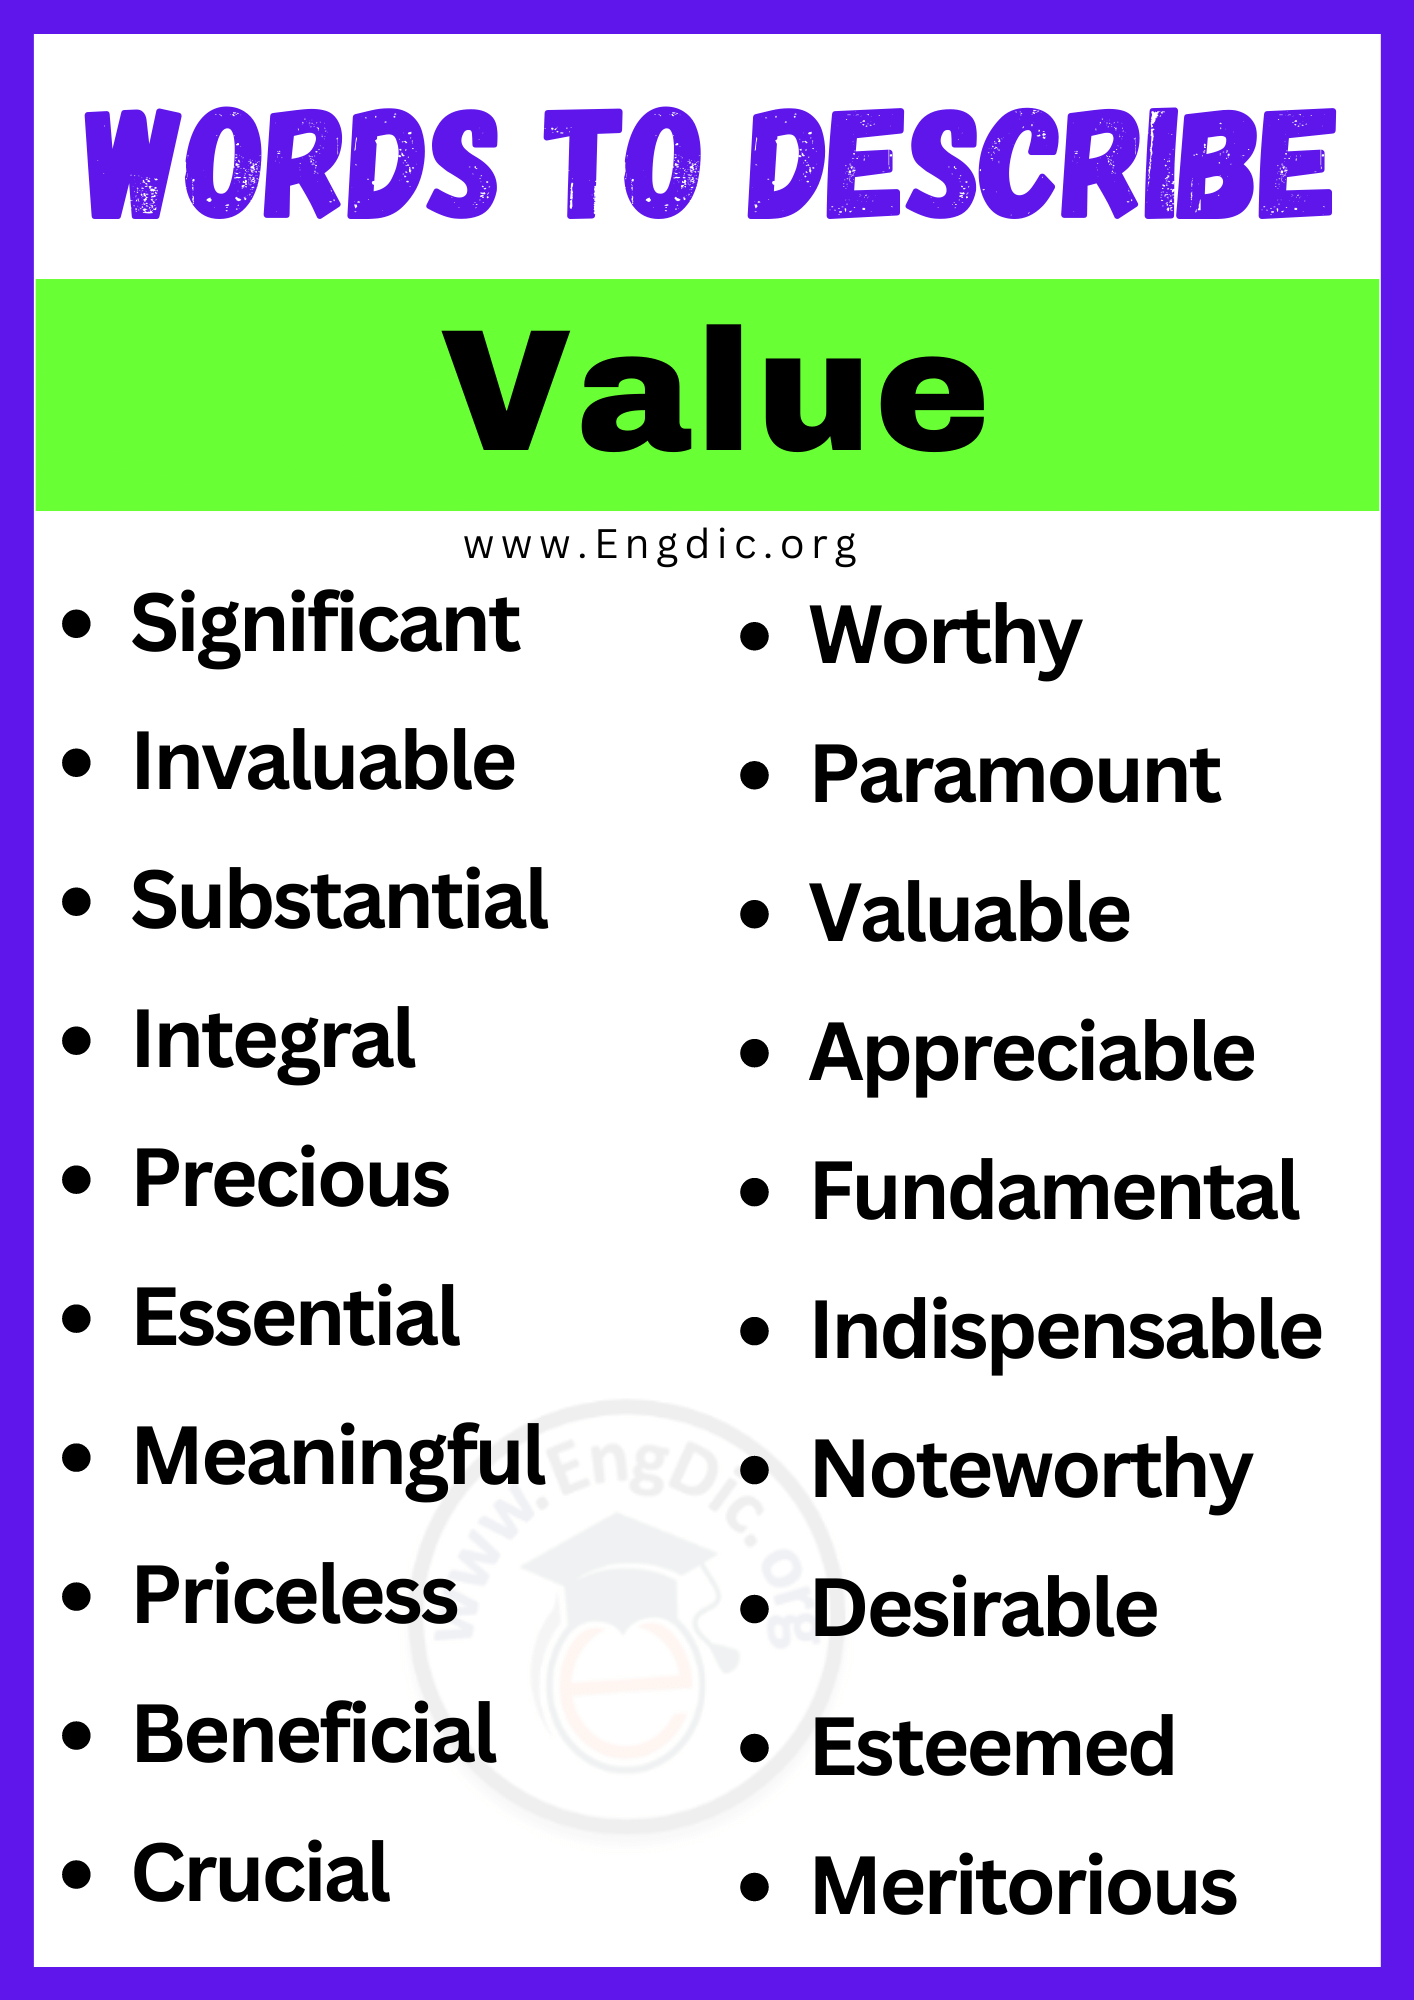 Words to Describe Value